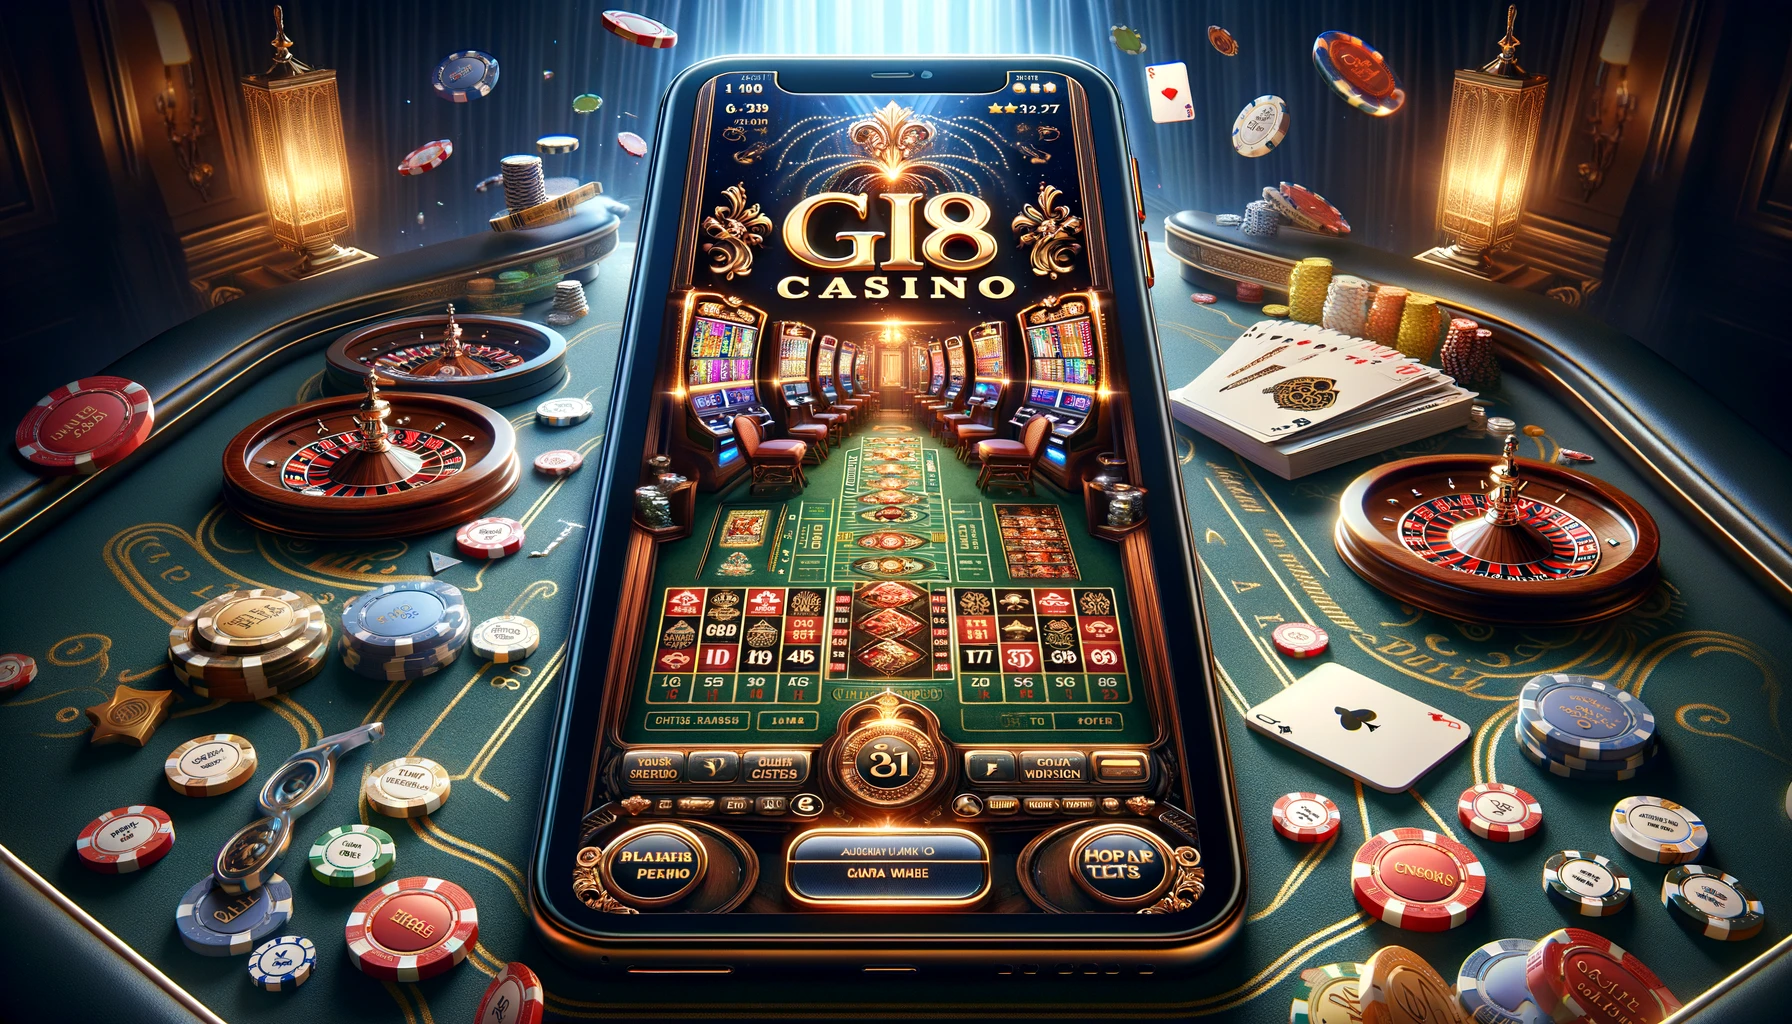 Mobile app casino GI8